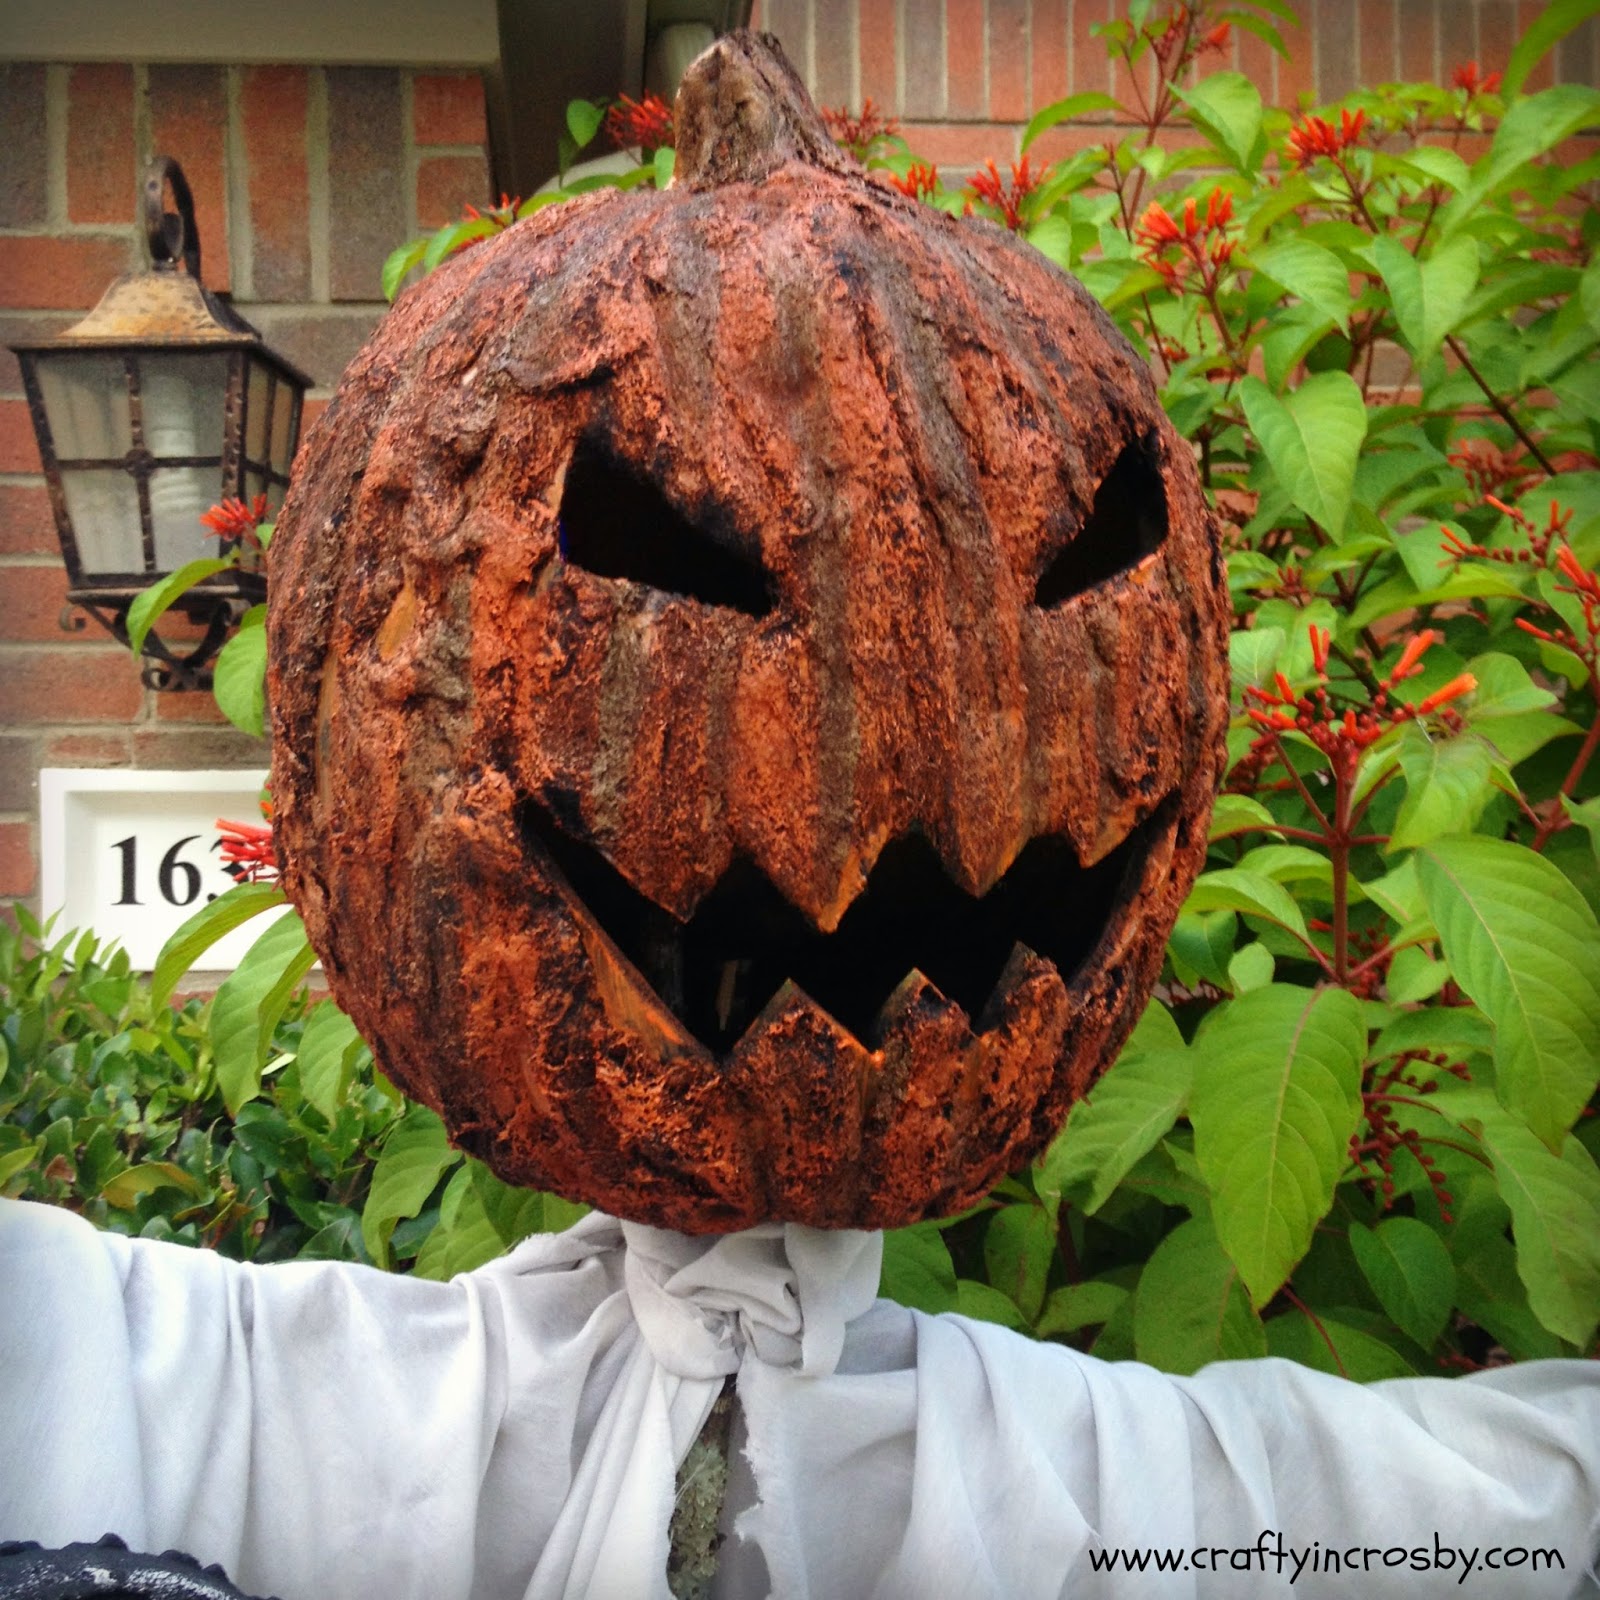 Crafty in Crosby: Creepy Pumpkin Scarecrow